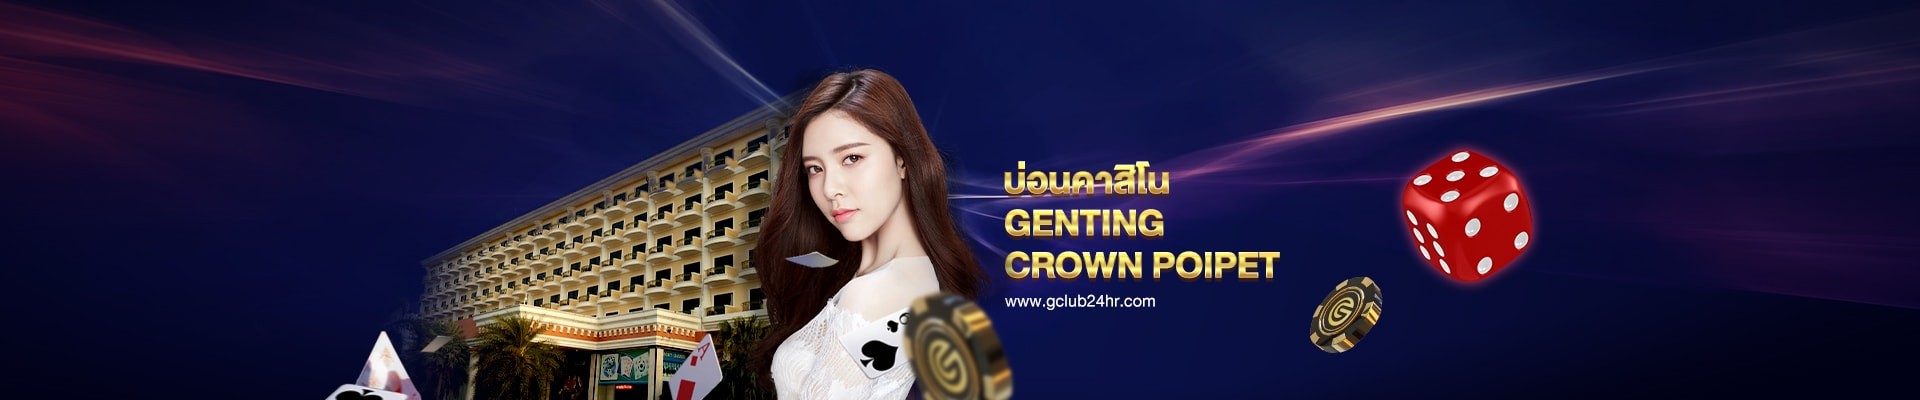 gclub24hr_casino_online_genting_crown_poipet